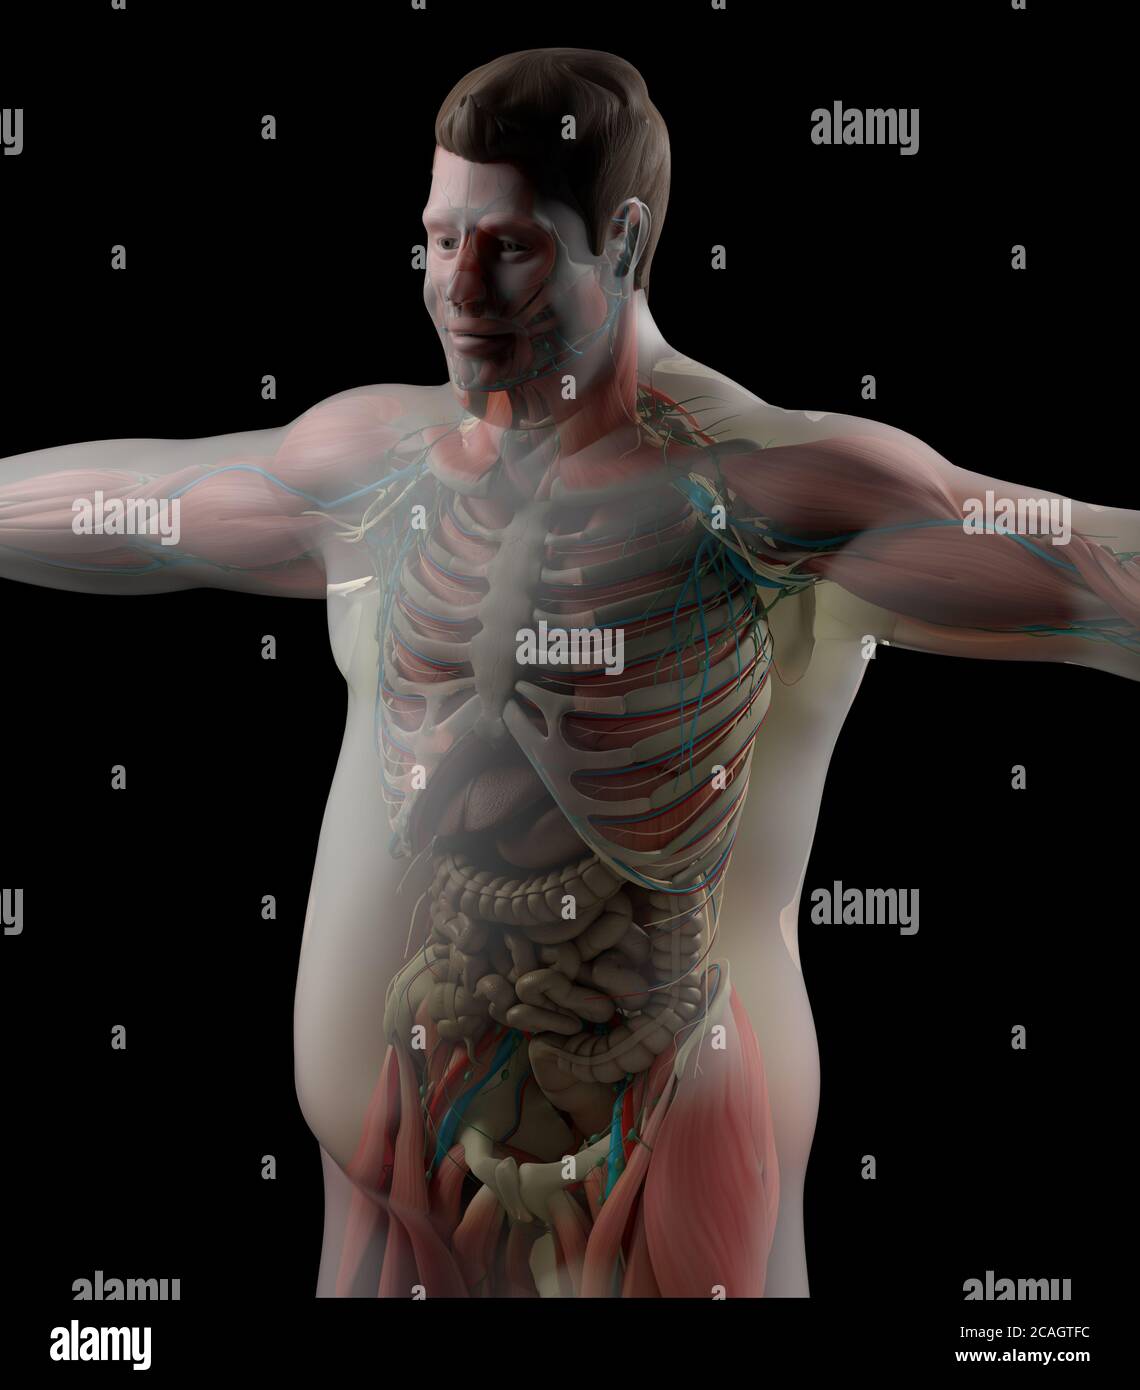 Übergewichtige menschliche fettleibige Anatomie. Diabetes. Herzkrankheit. 3D-Illustration. Stockfoto